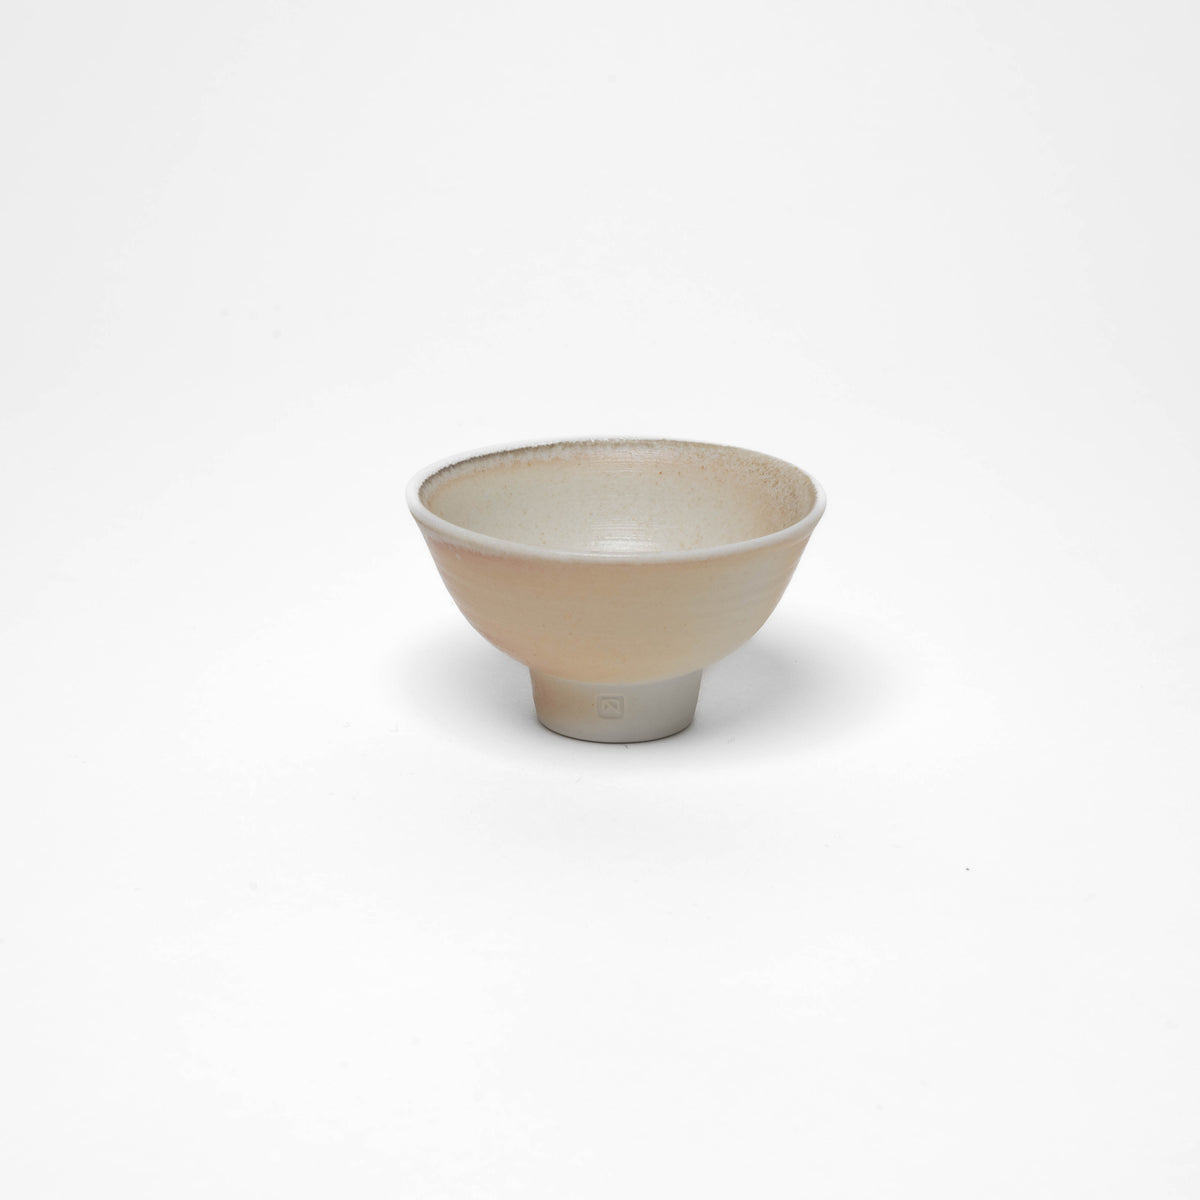 Fine porcelain sake bowls